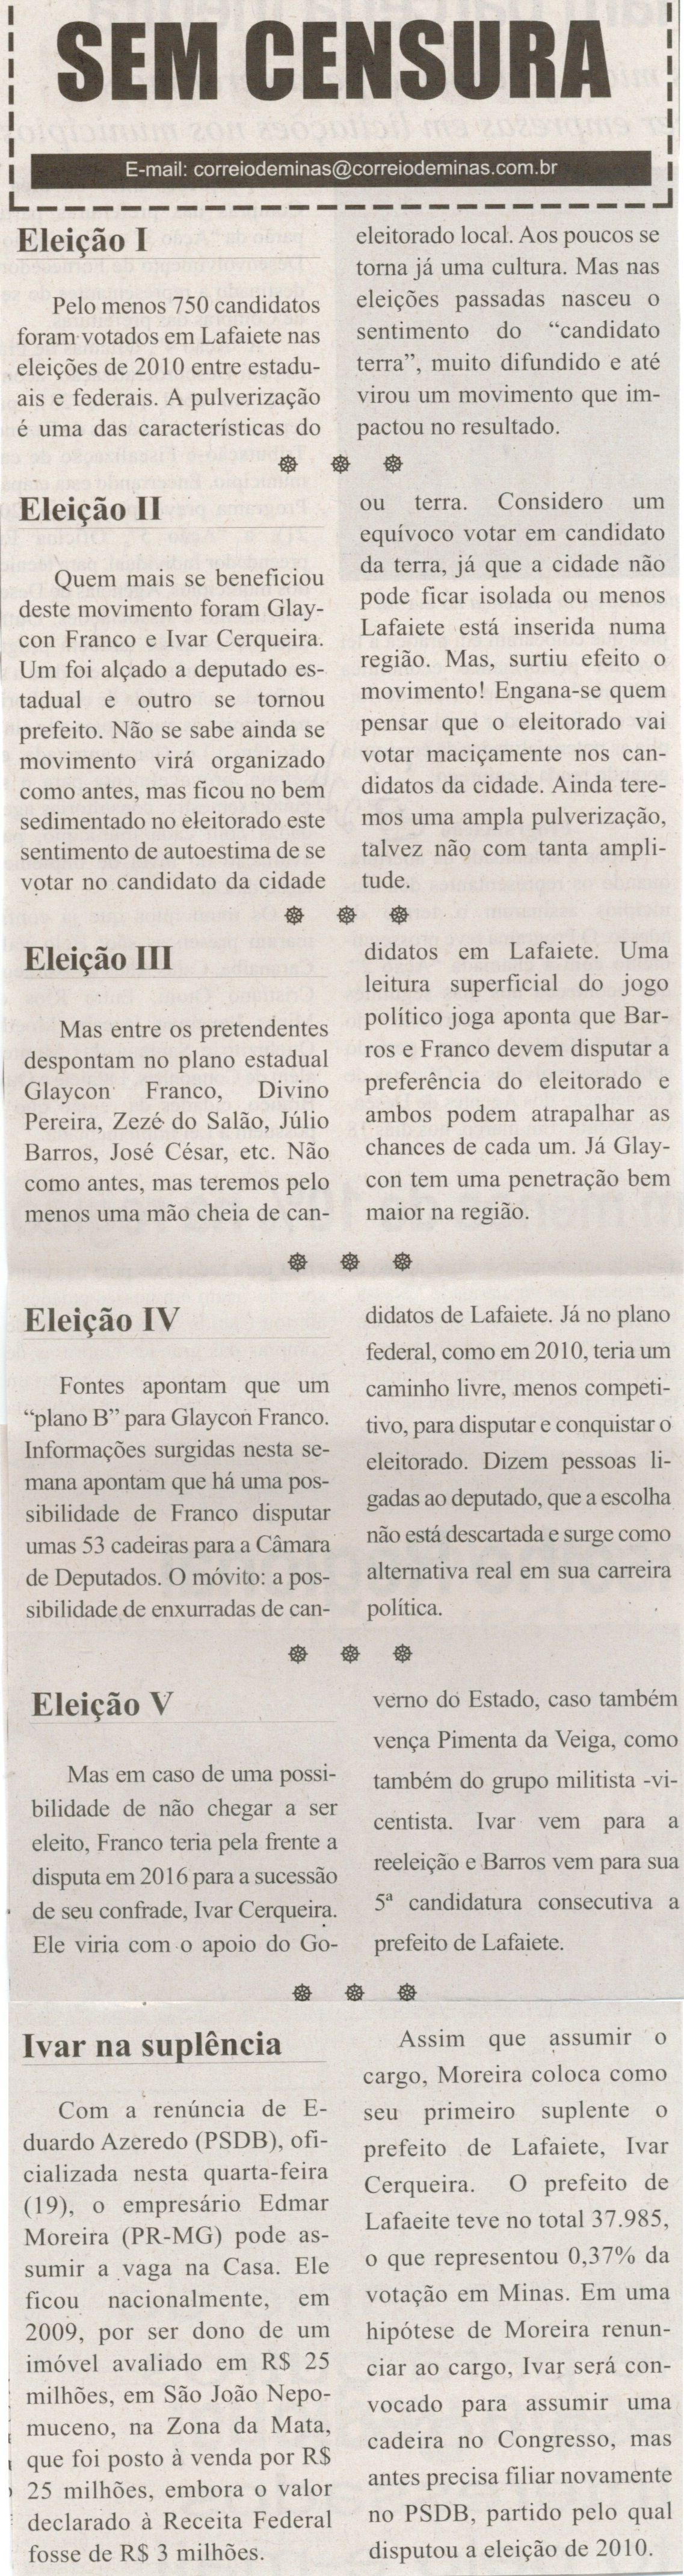 Eleições I; Eleições II; Eleições III; Eleições VI; Eleições V . Correio de Minas, Conselheiro Lafaiete,  22 fev. 2014, Sem Censura, p. 3.